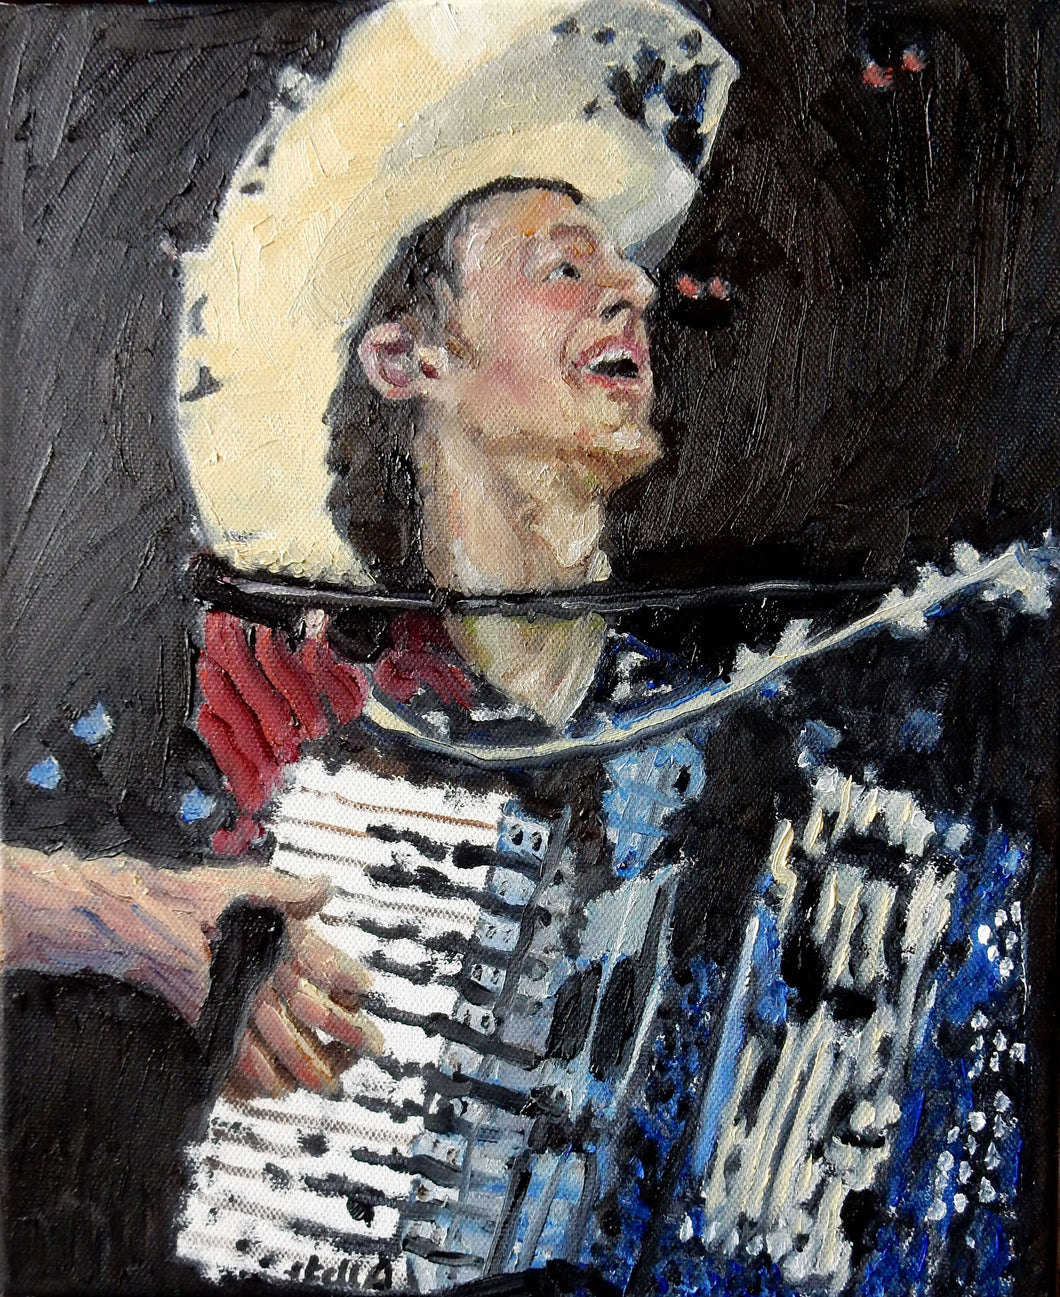 Los Pacaminos accordionist oil on canvas artwork by Stella Tooth